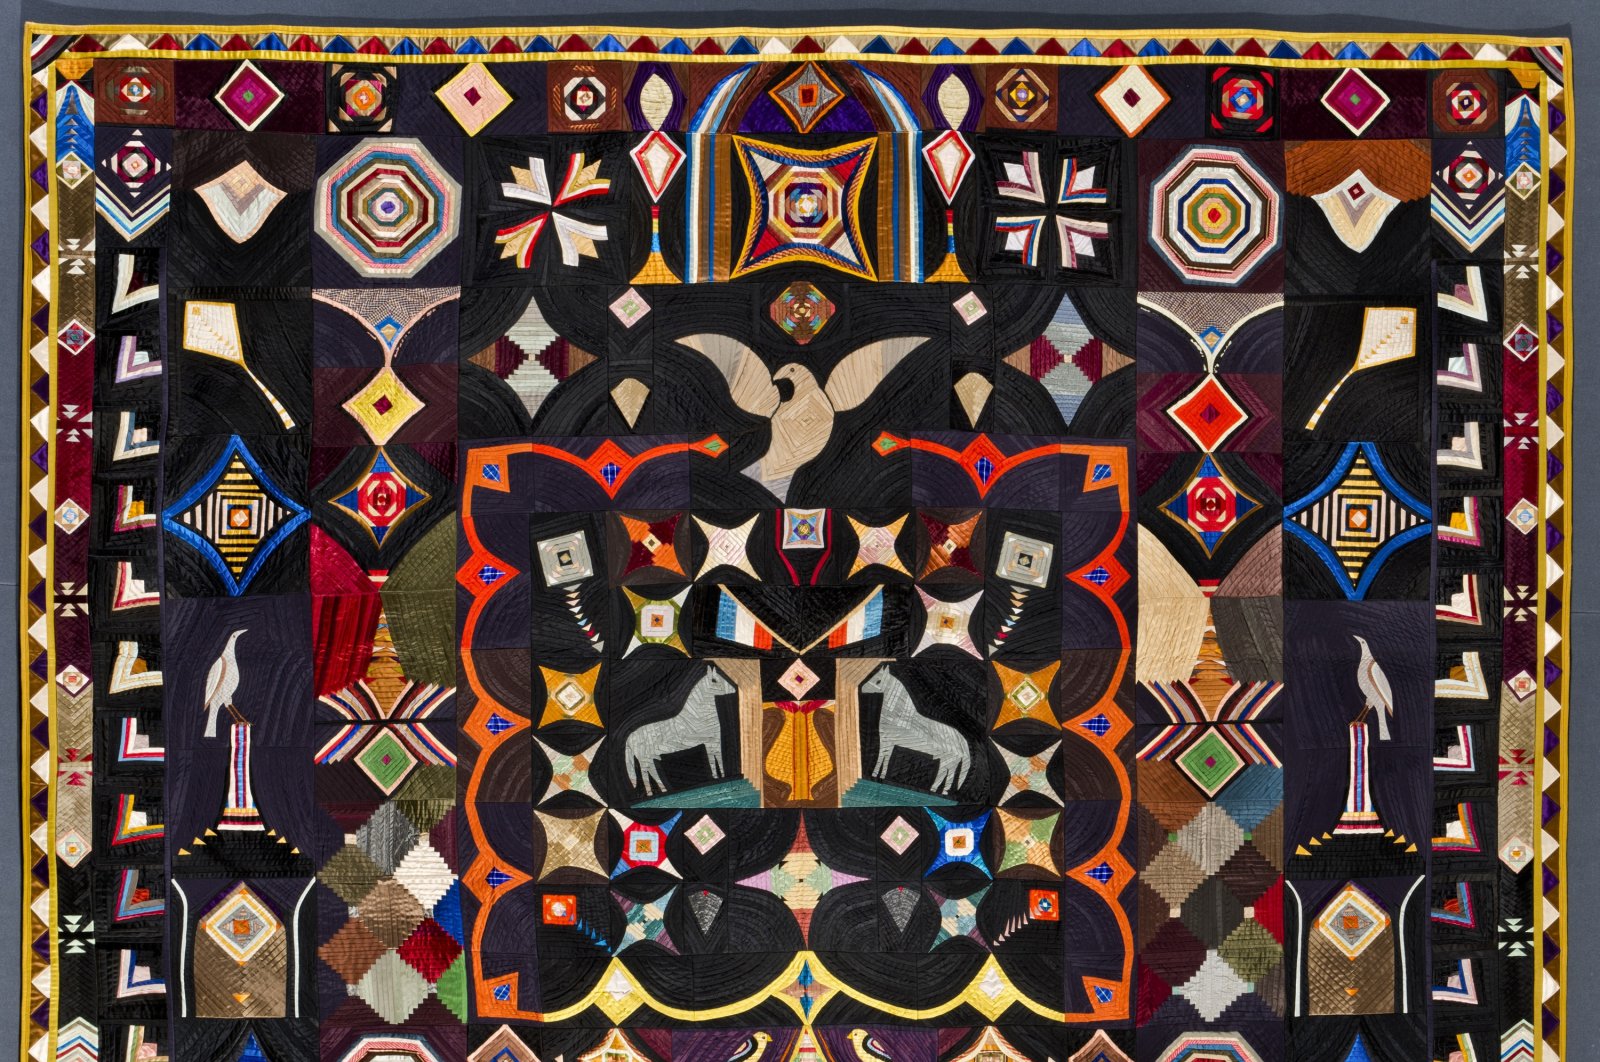 Kaleidoskop sejarah diresmikan dalam selimut di American Folk Art Museum